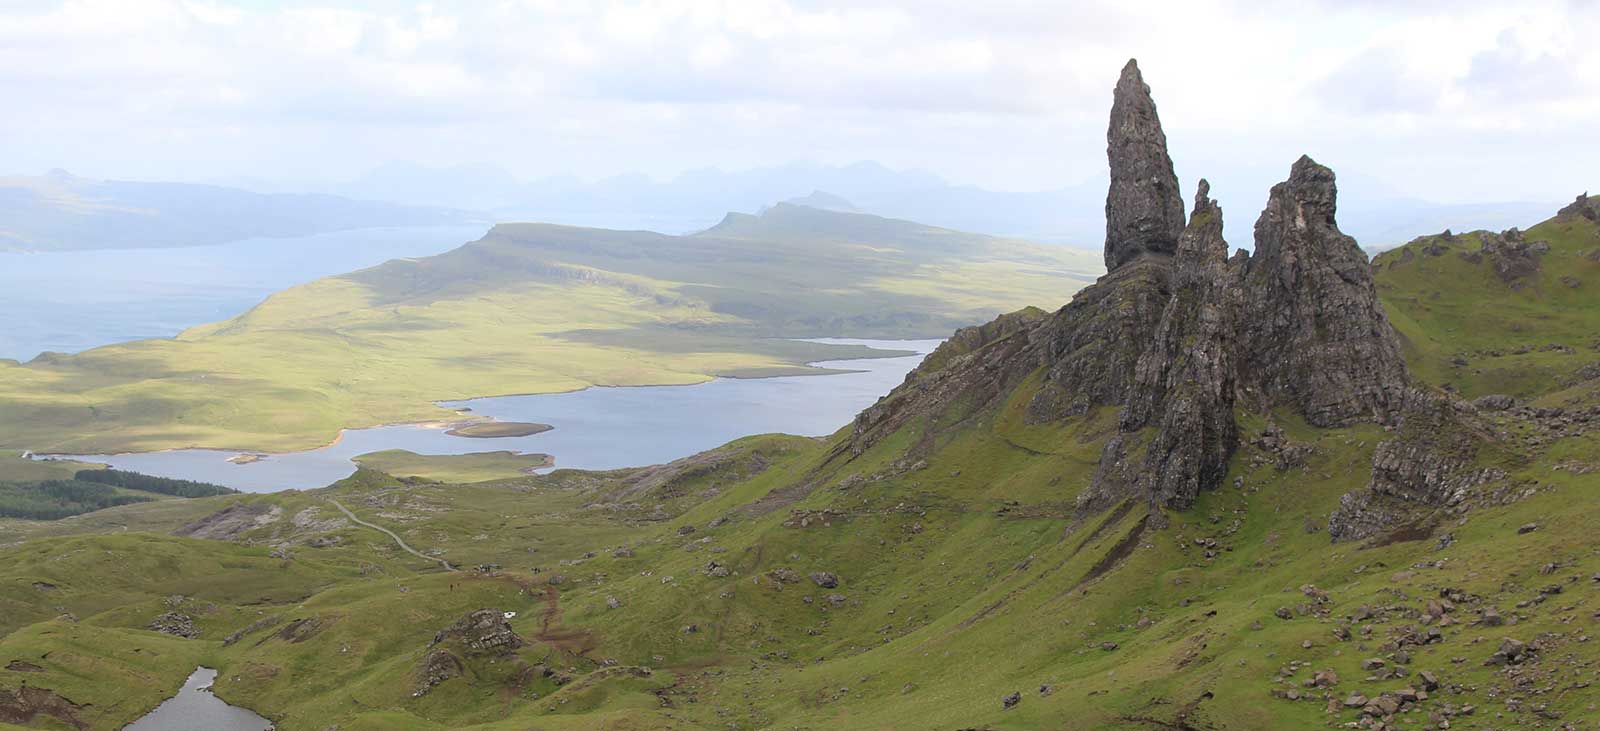 Image of the isle of Skye Scotland UK